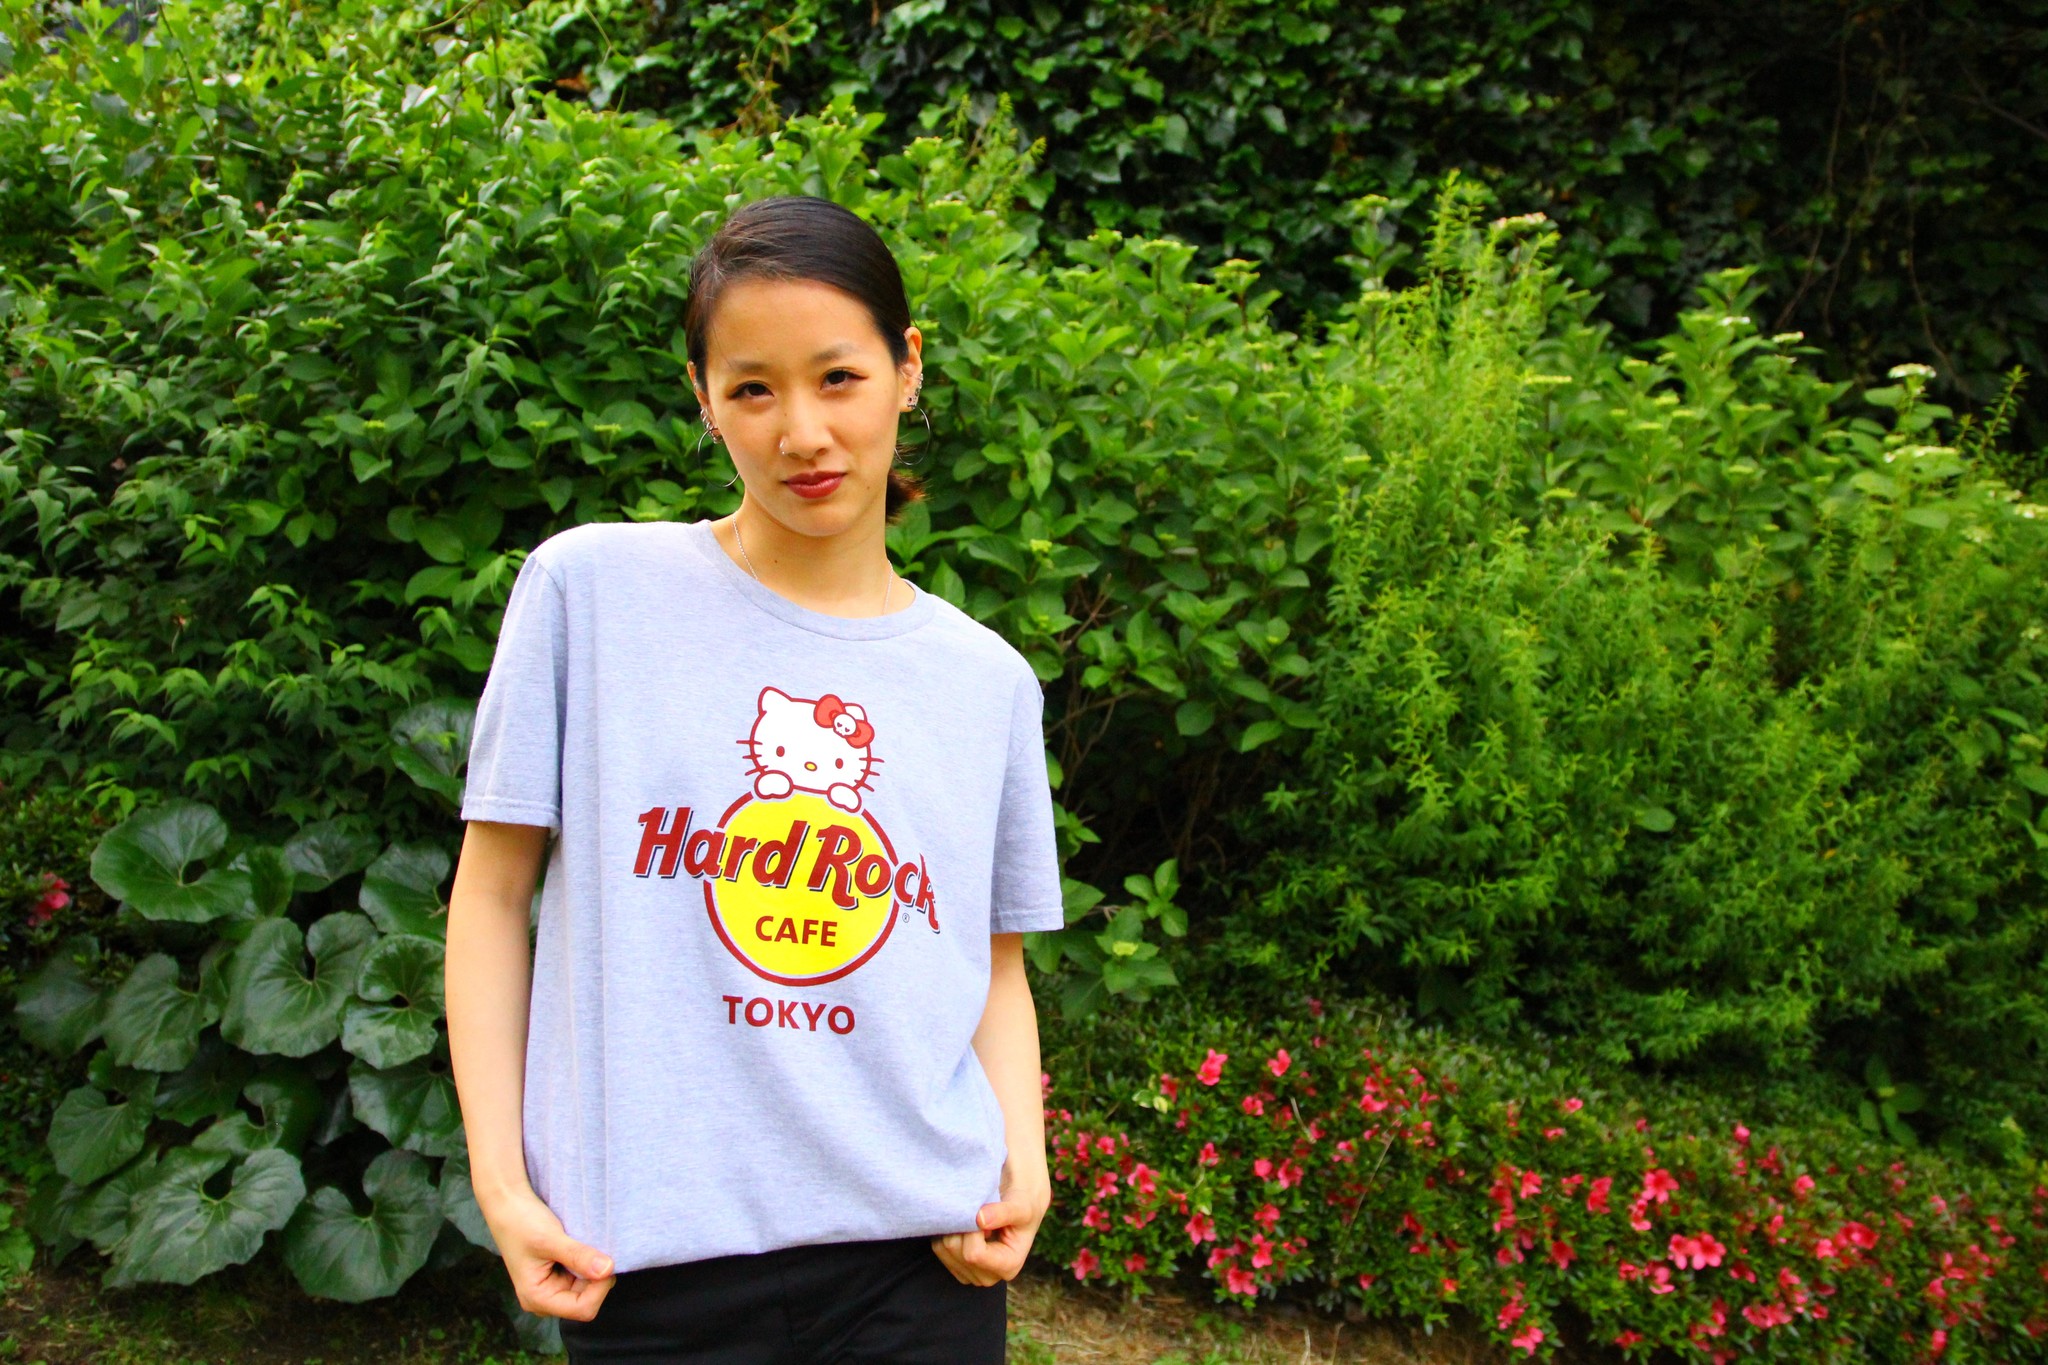 ハードロックカフェ」×「ハローキティ」コラボレーションTシャツ 販売